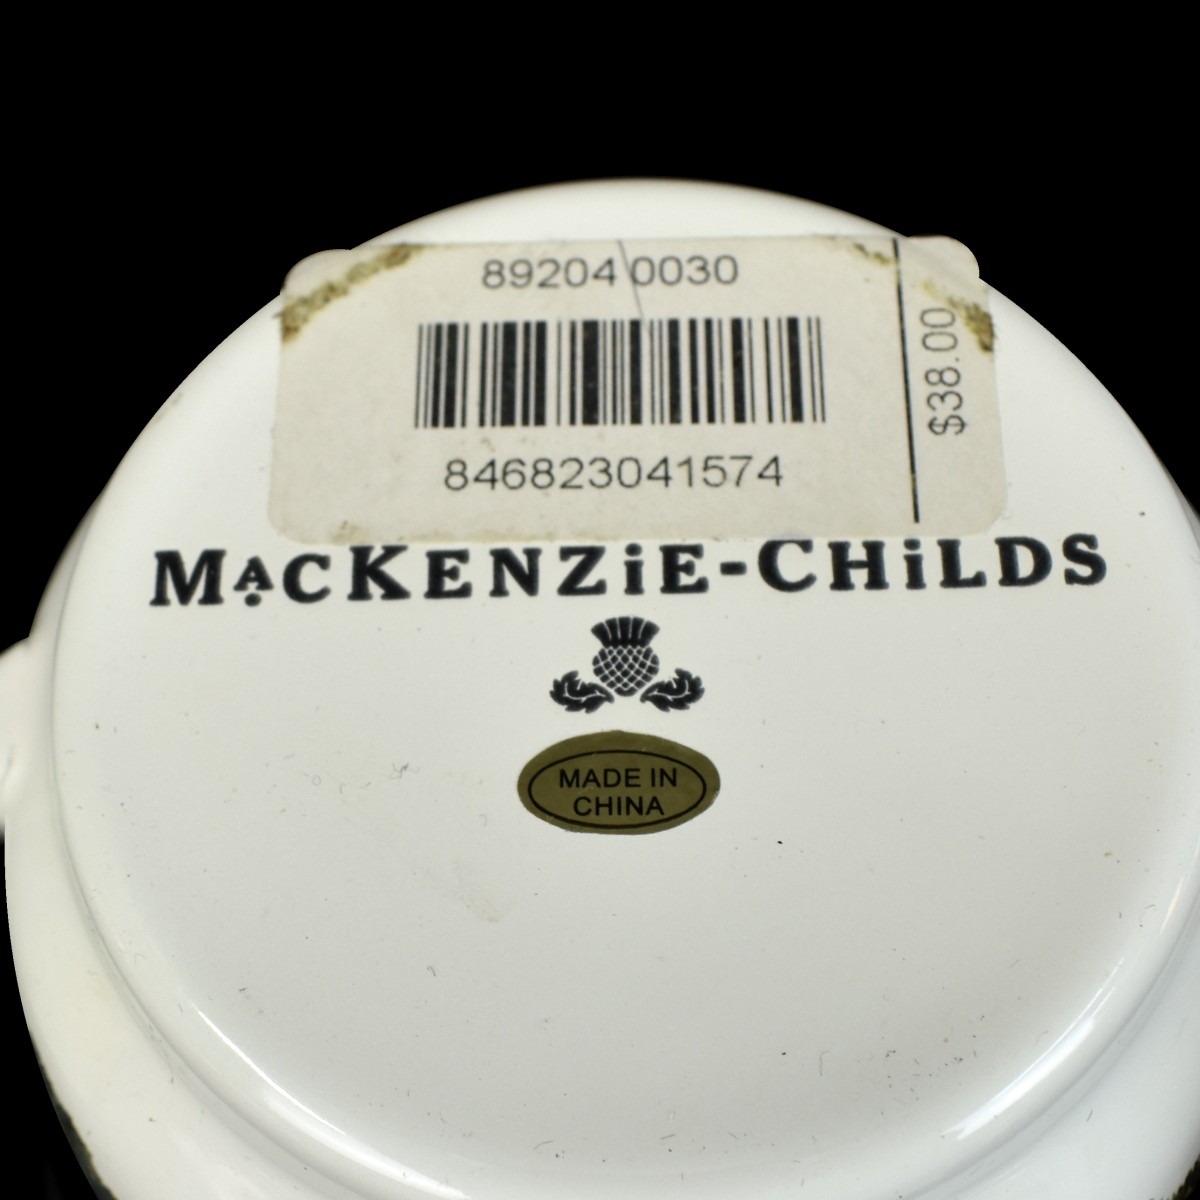 Mackenzie Childs Tableware